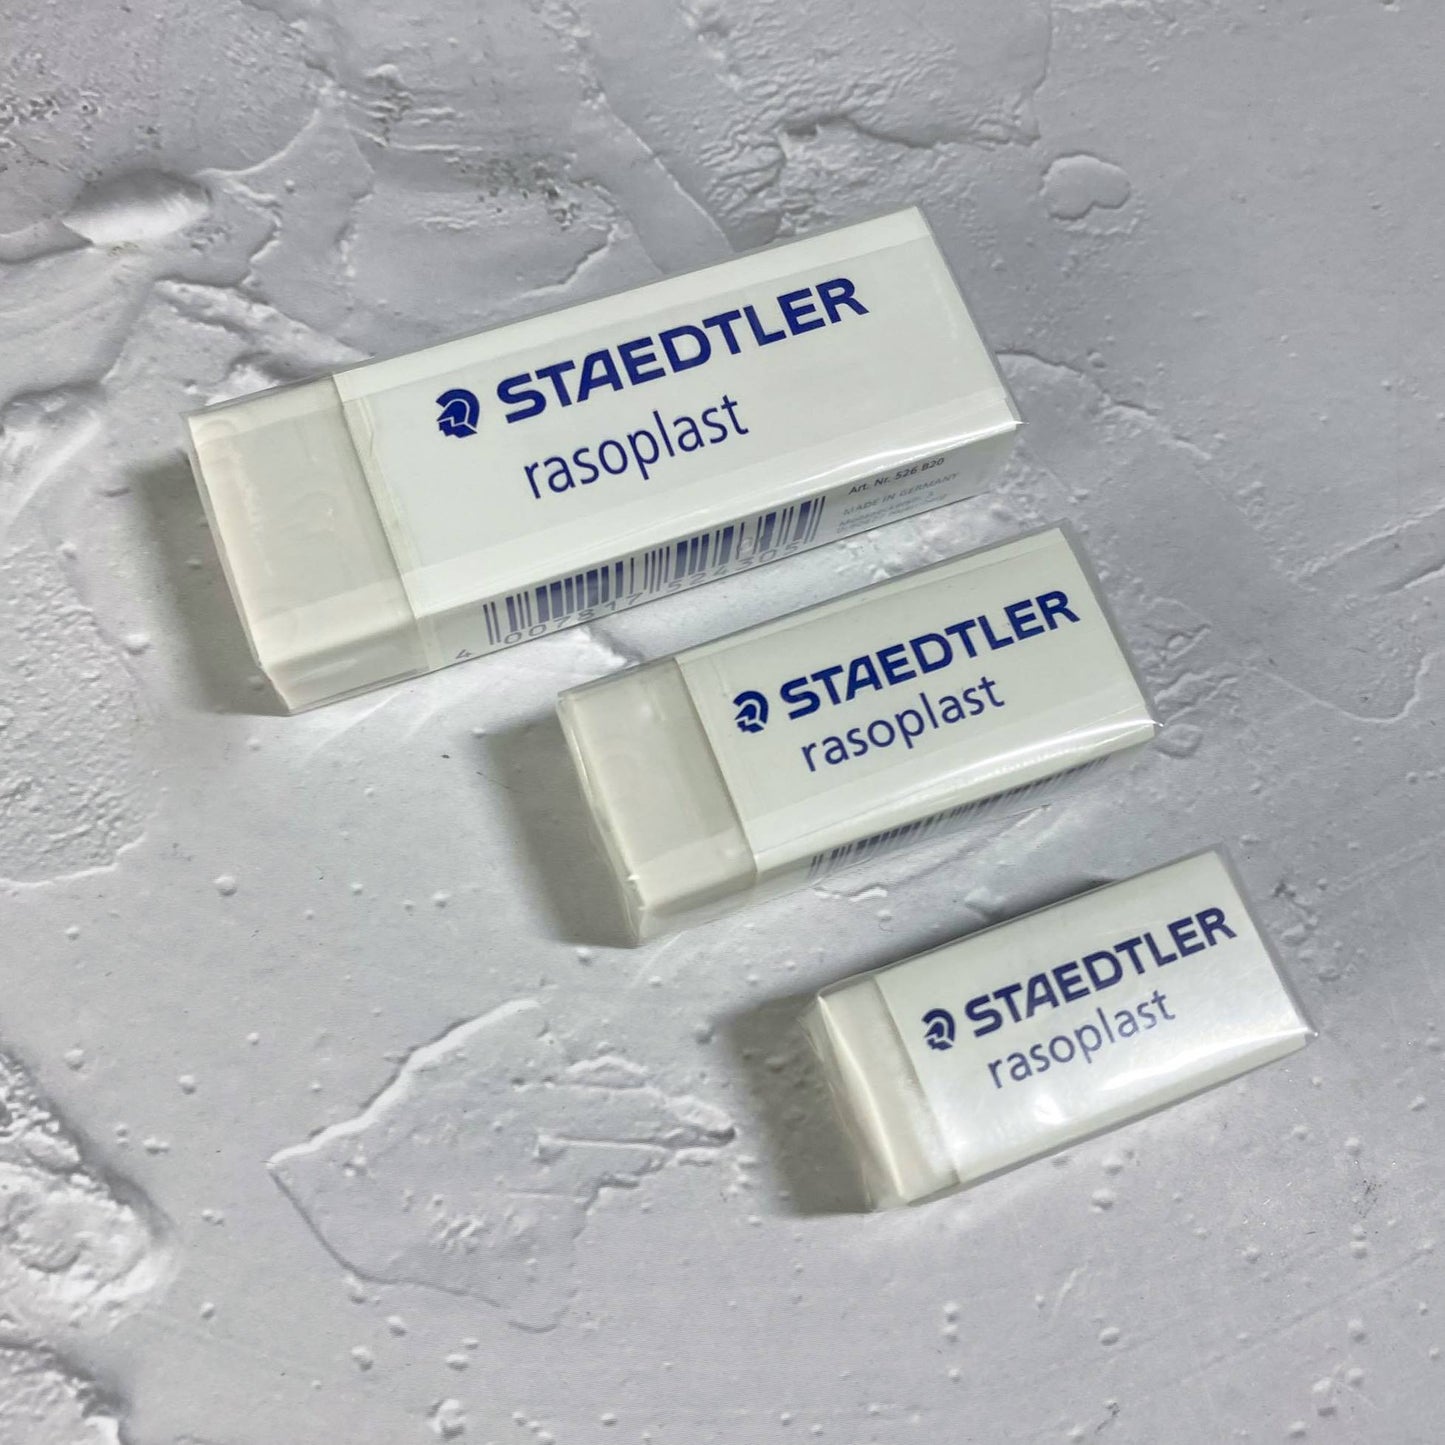 Staedtler Rasoplast Eraser Large (Size: 65 x 23 x 13 mm)